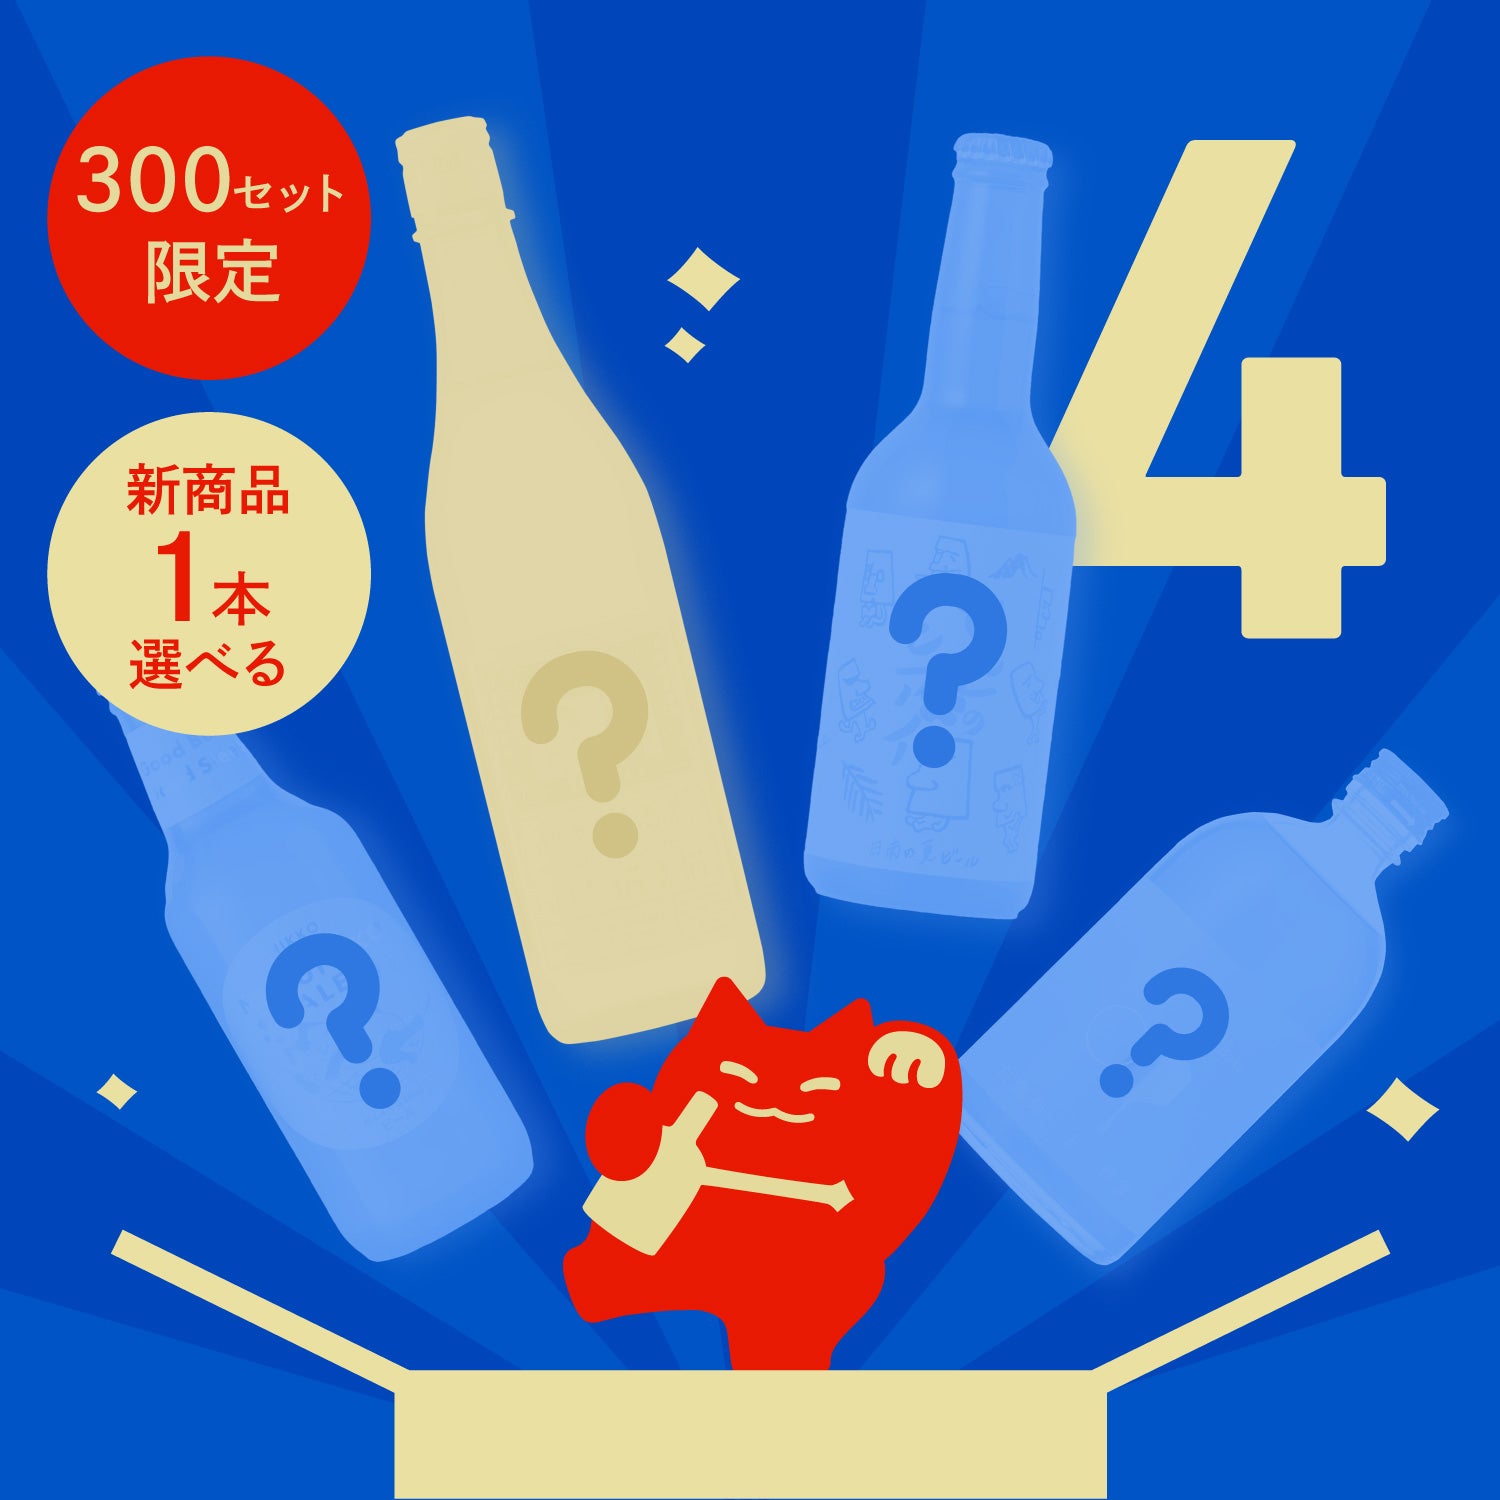 【300セット限定】新商品から1本選べる4連酒ガチャ